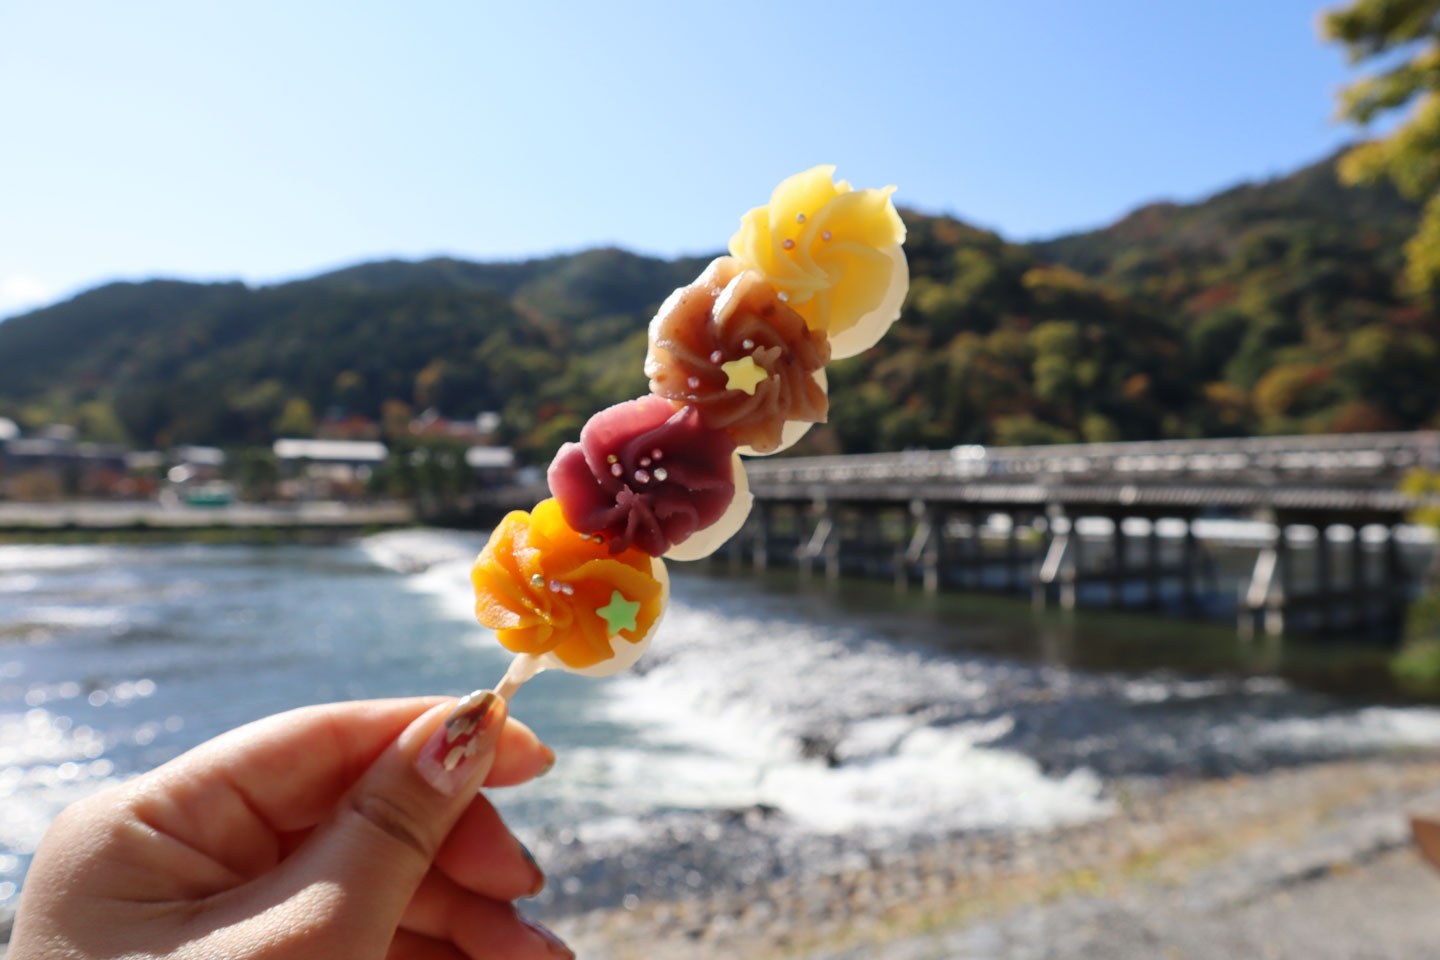 嵐山の食べ歩きおすすめグルメ!  京都観光でグルメを堪能